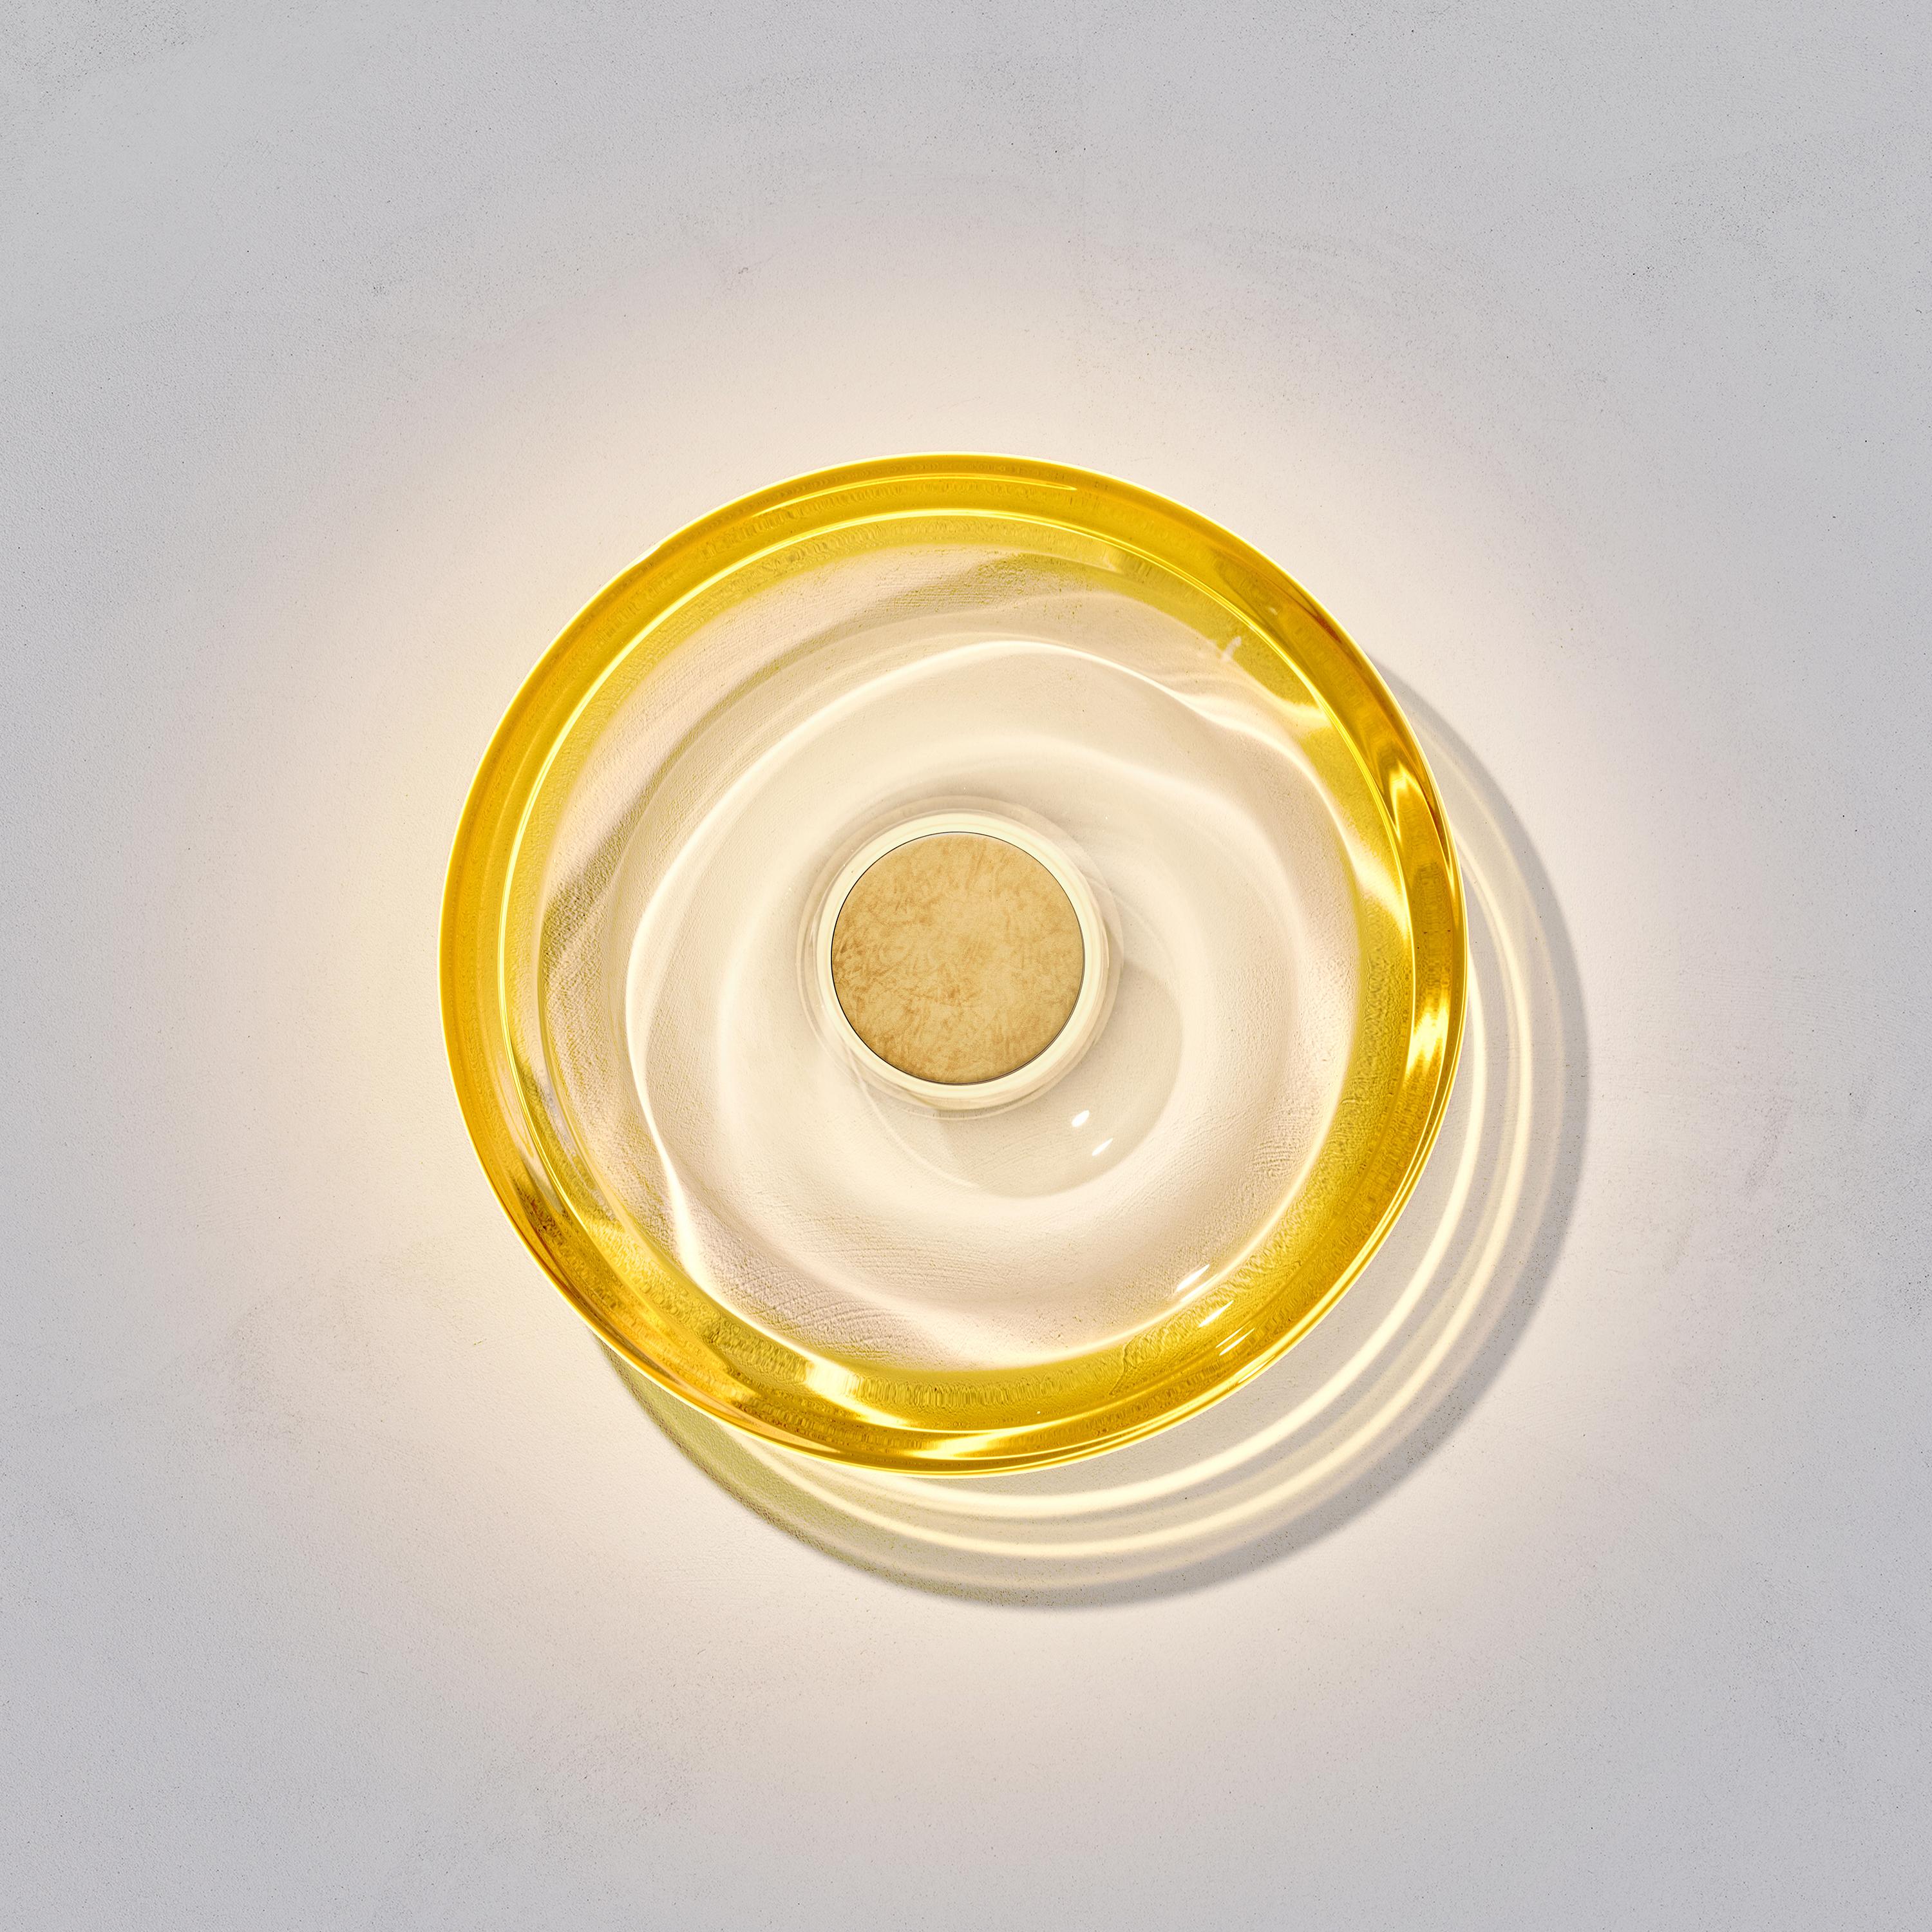 L'applique murale en ambre liquide est conçue par l'artiste internationale d'éclairage Eva Menz. Inspiré par les ondulations et les reflets circulaires créés sur l'eau, le verre à dégradé jaune se transforme en une belle applique